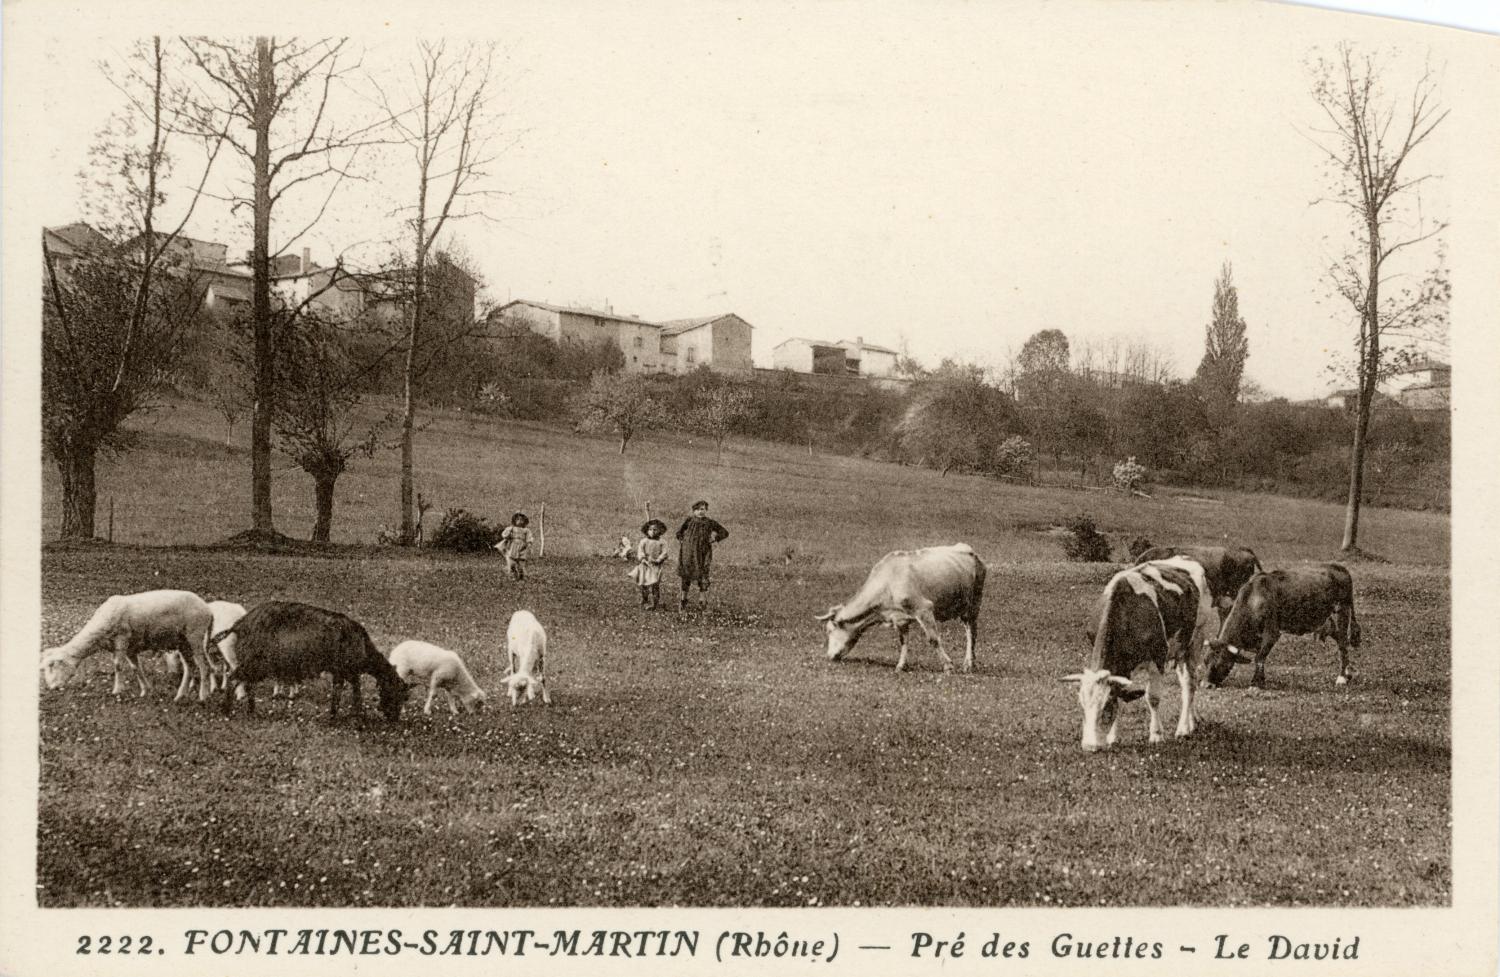 Fontaines-Saint-Martin (Rhône). - Pré des Guettes. - Le David